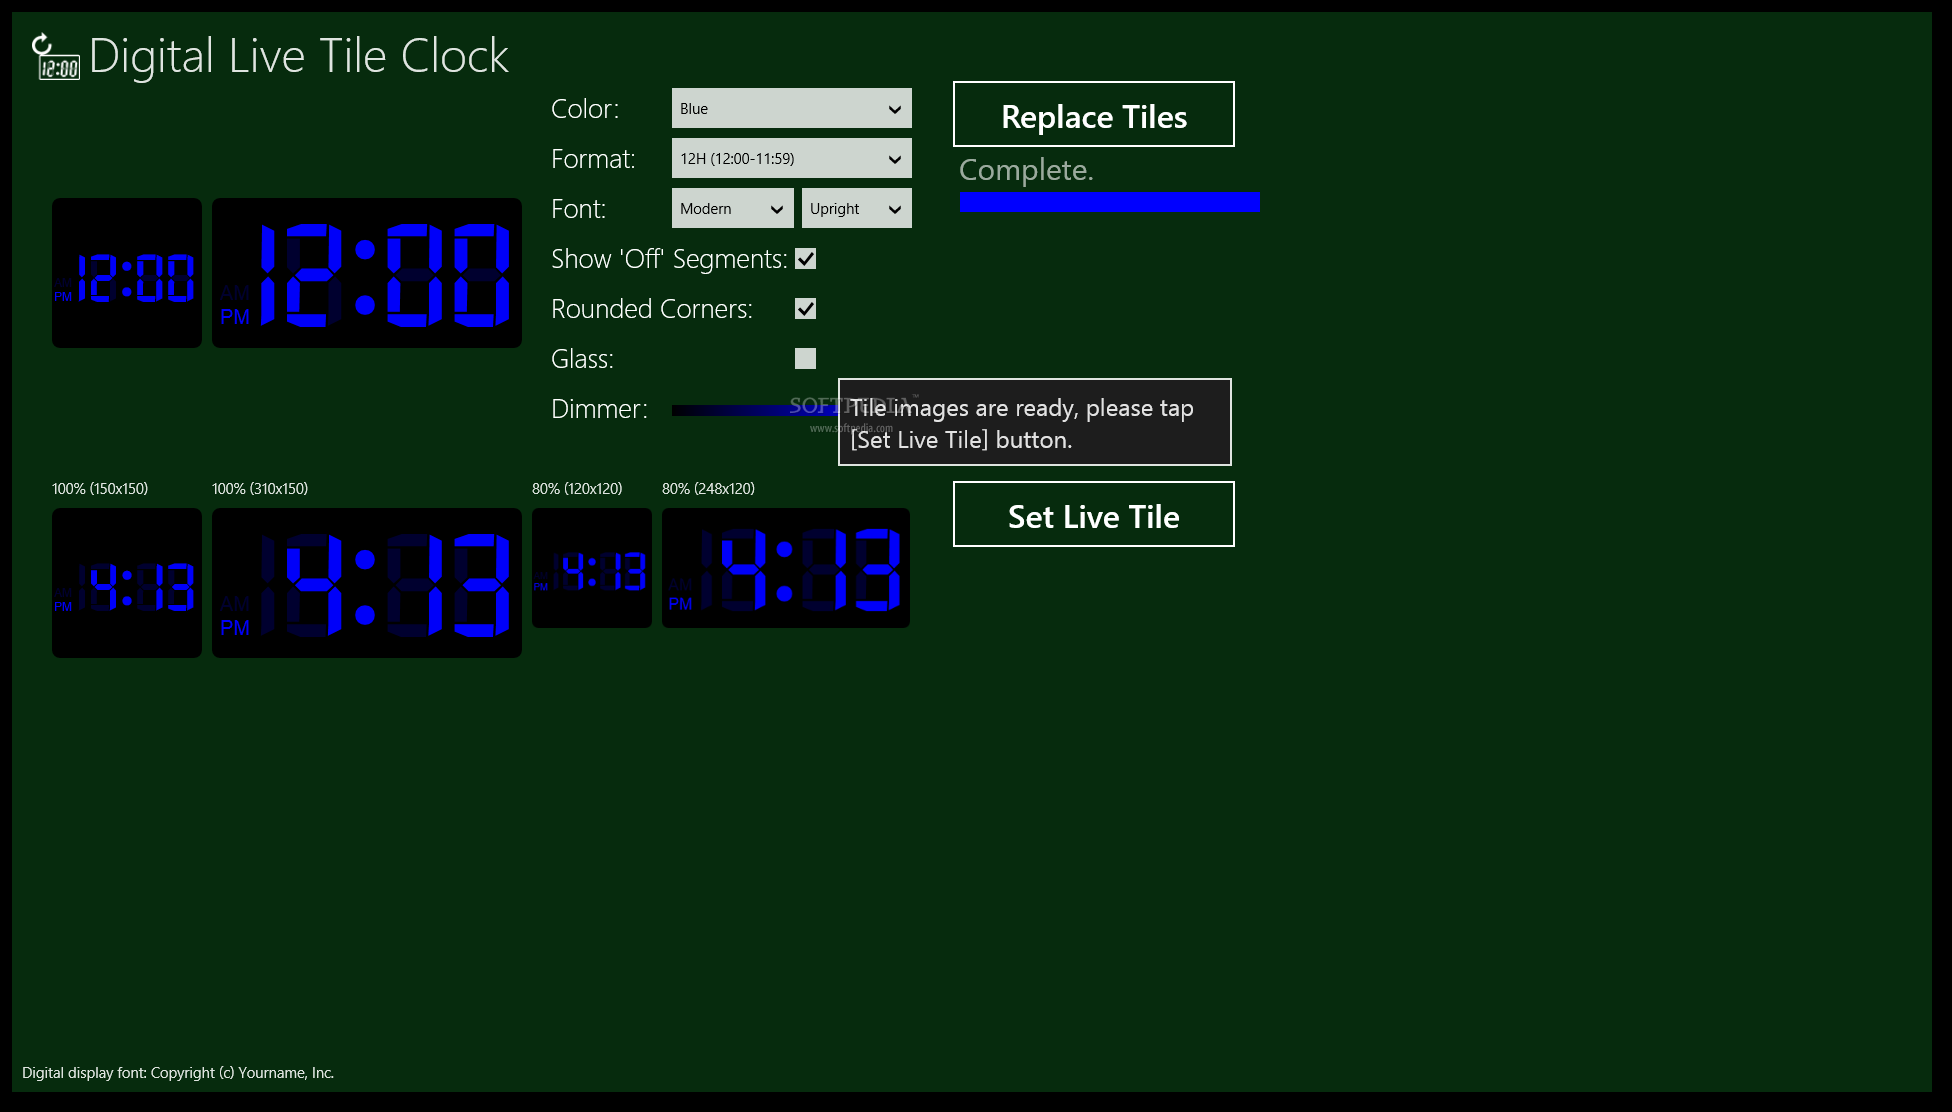 Digital Live Tile Clock for Windows 10/8.1